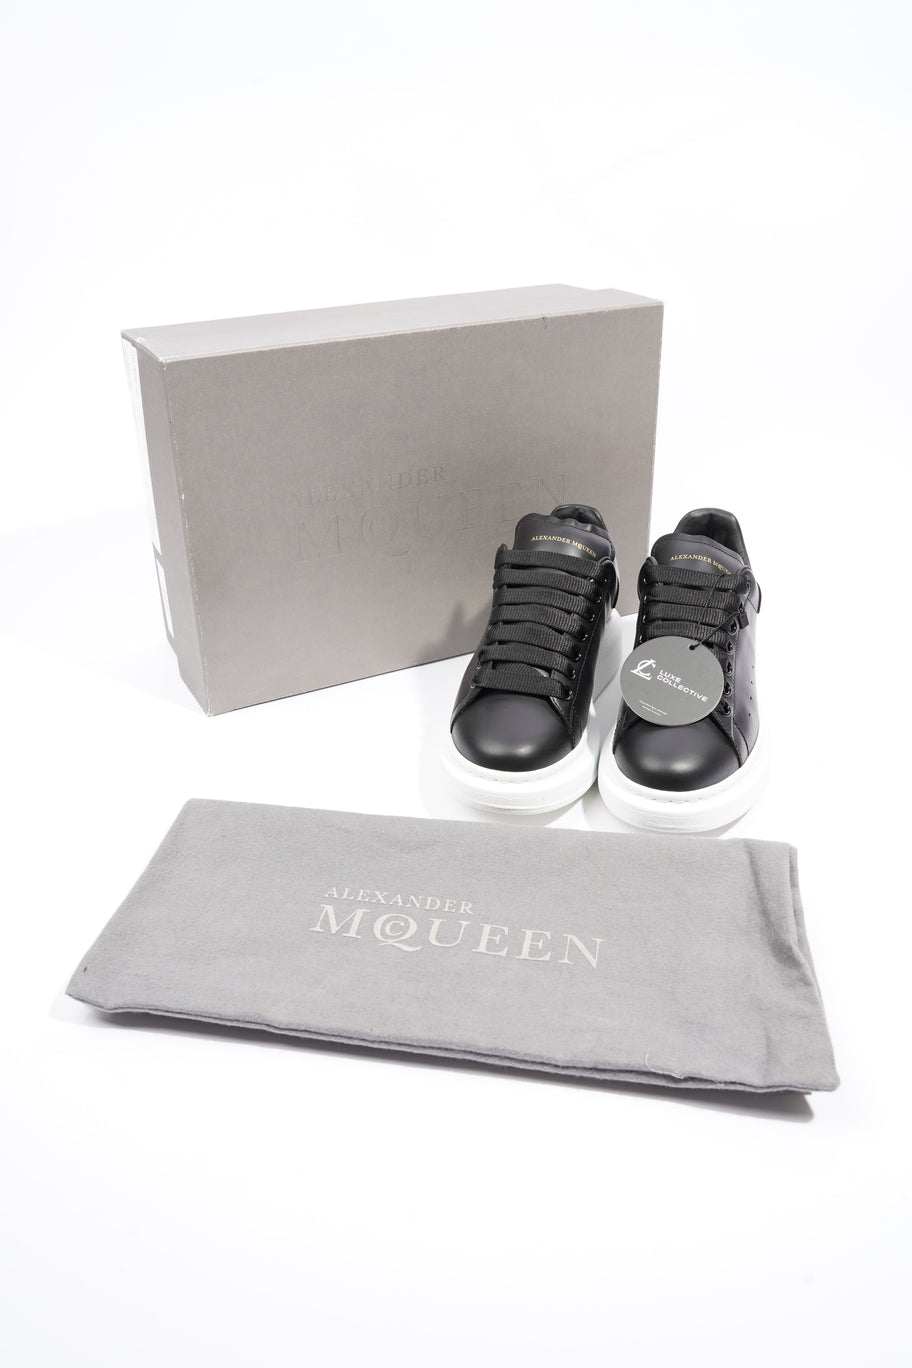 Alexander McQueen Oversized Sneakers Black Leather EU 38 UK 5 Image 10